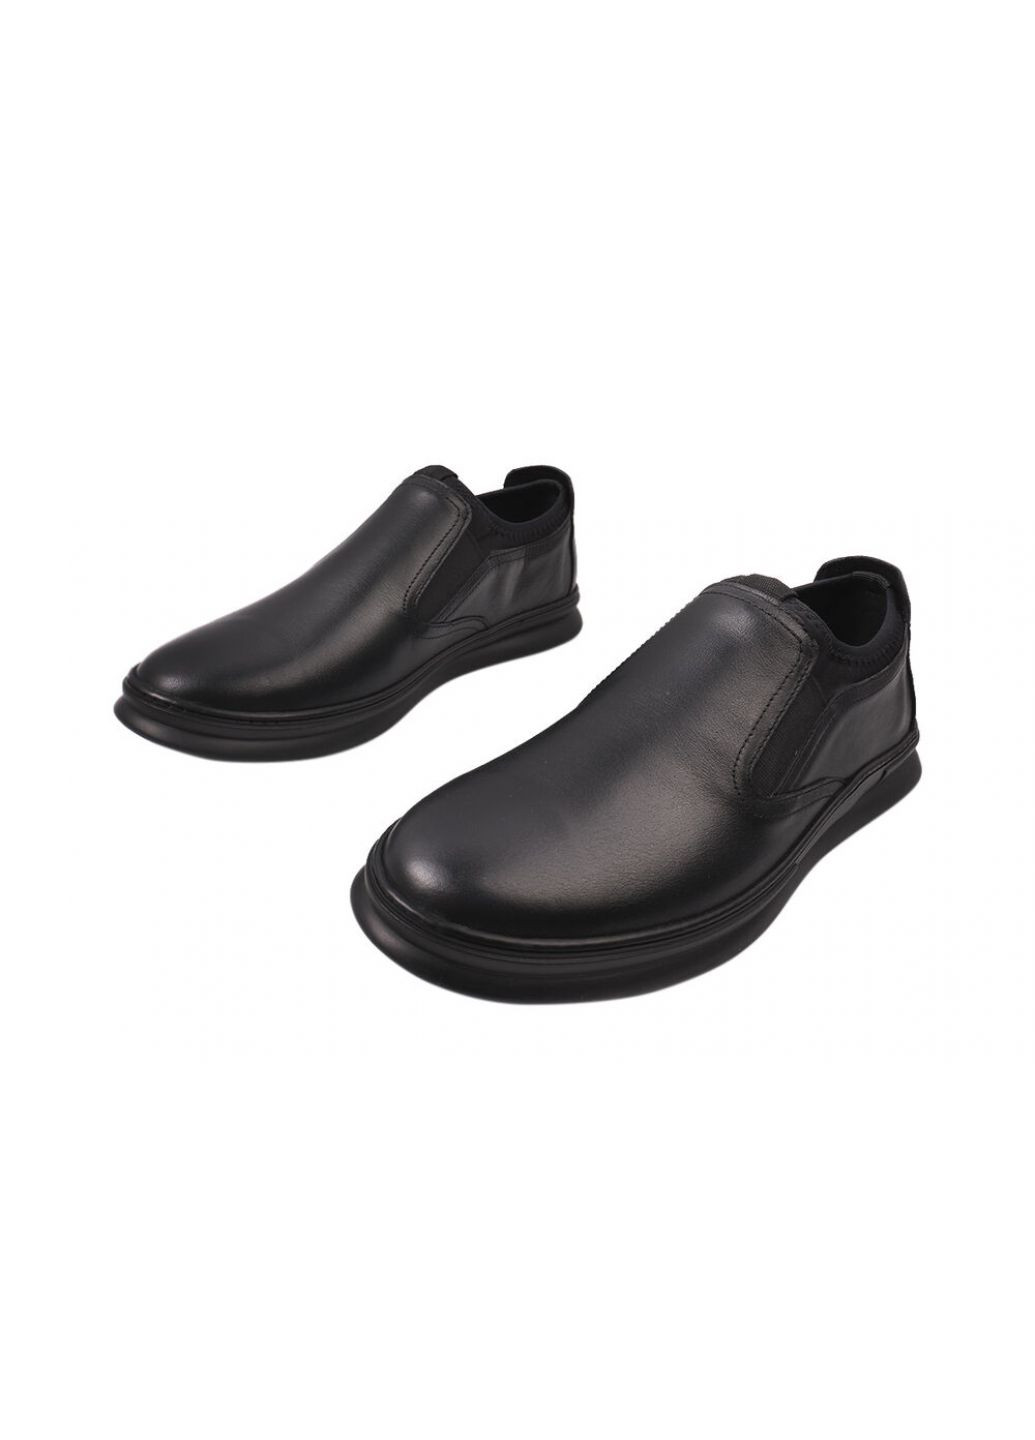 Черные туфли мужские из натуральной кожи, на низком ходу, цвет черный, украина Rondo